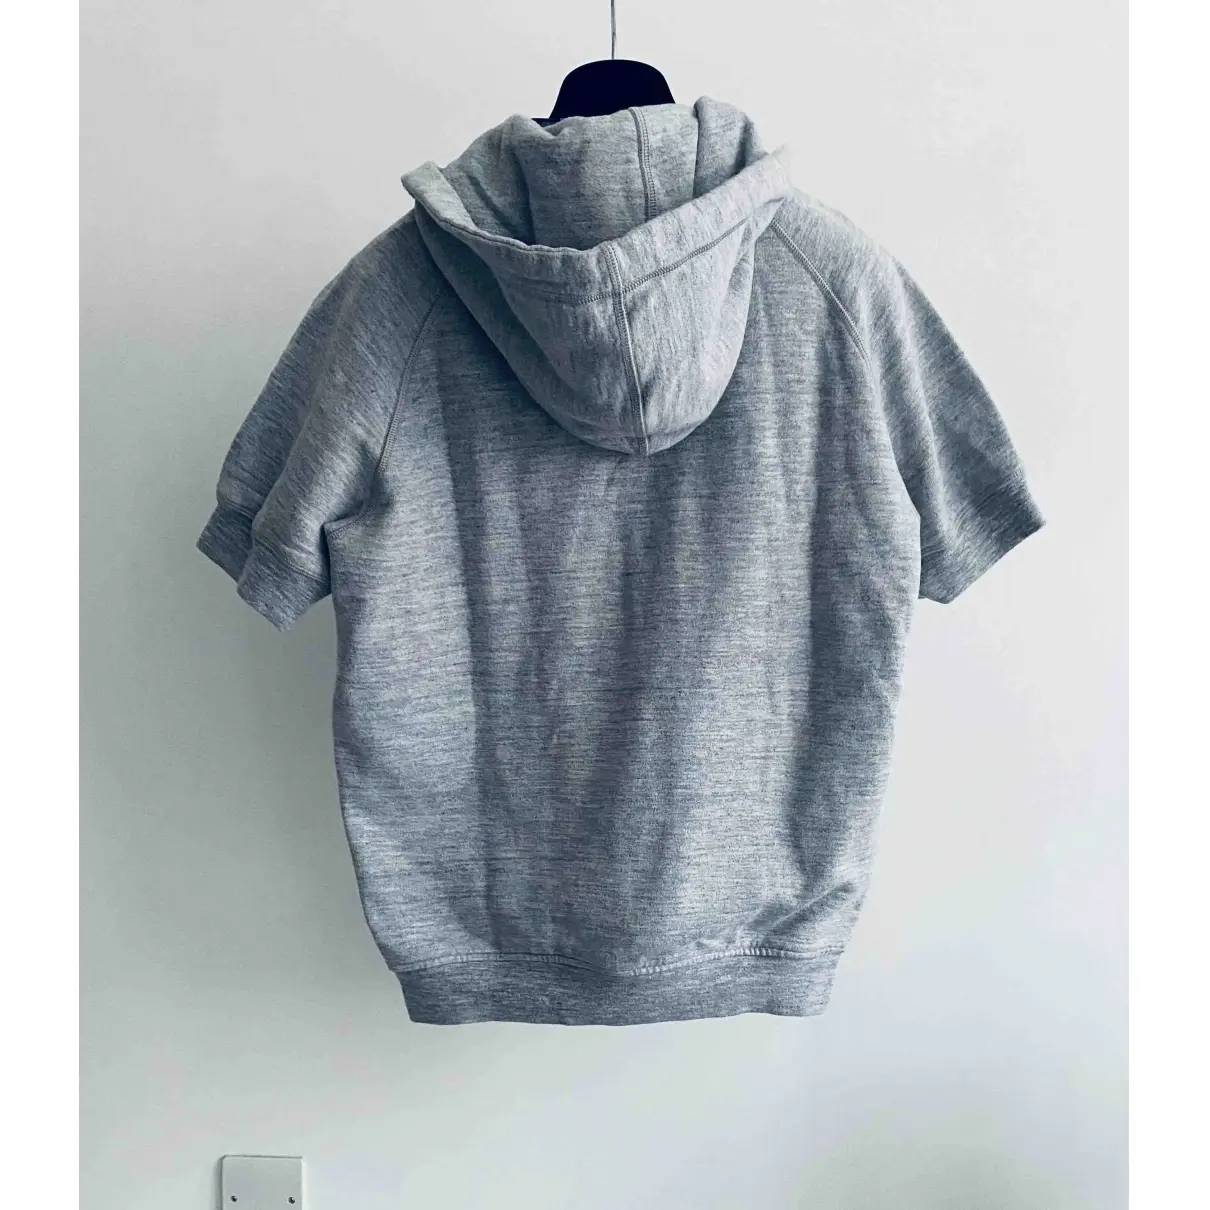 Buy Dsquared2 Grey Cotton Knitwear & Sweatshirt online